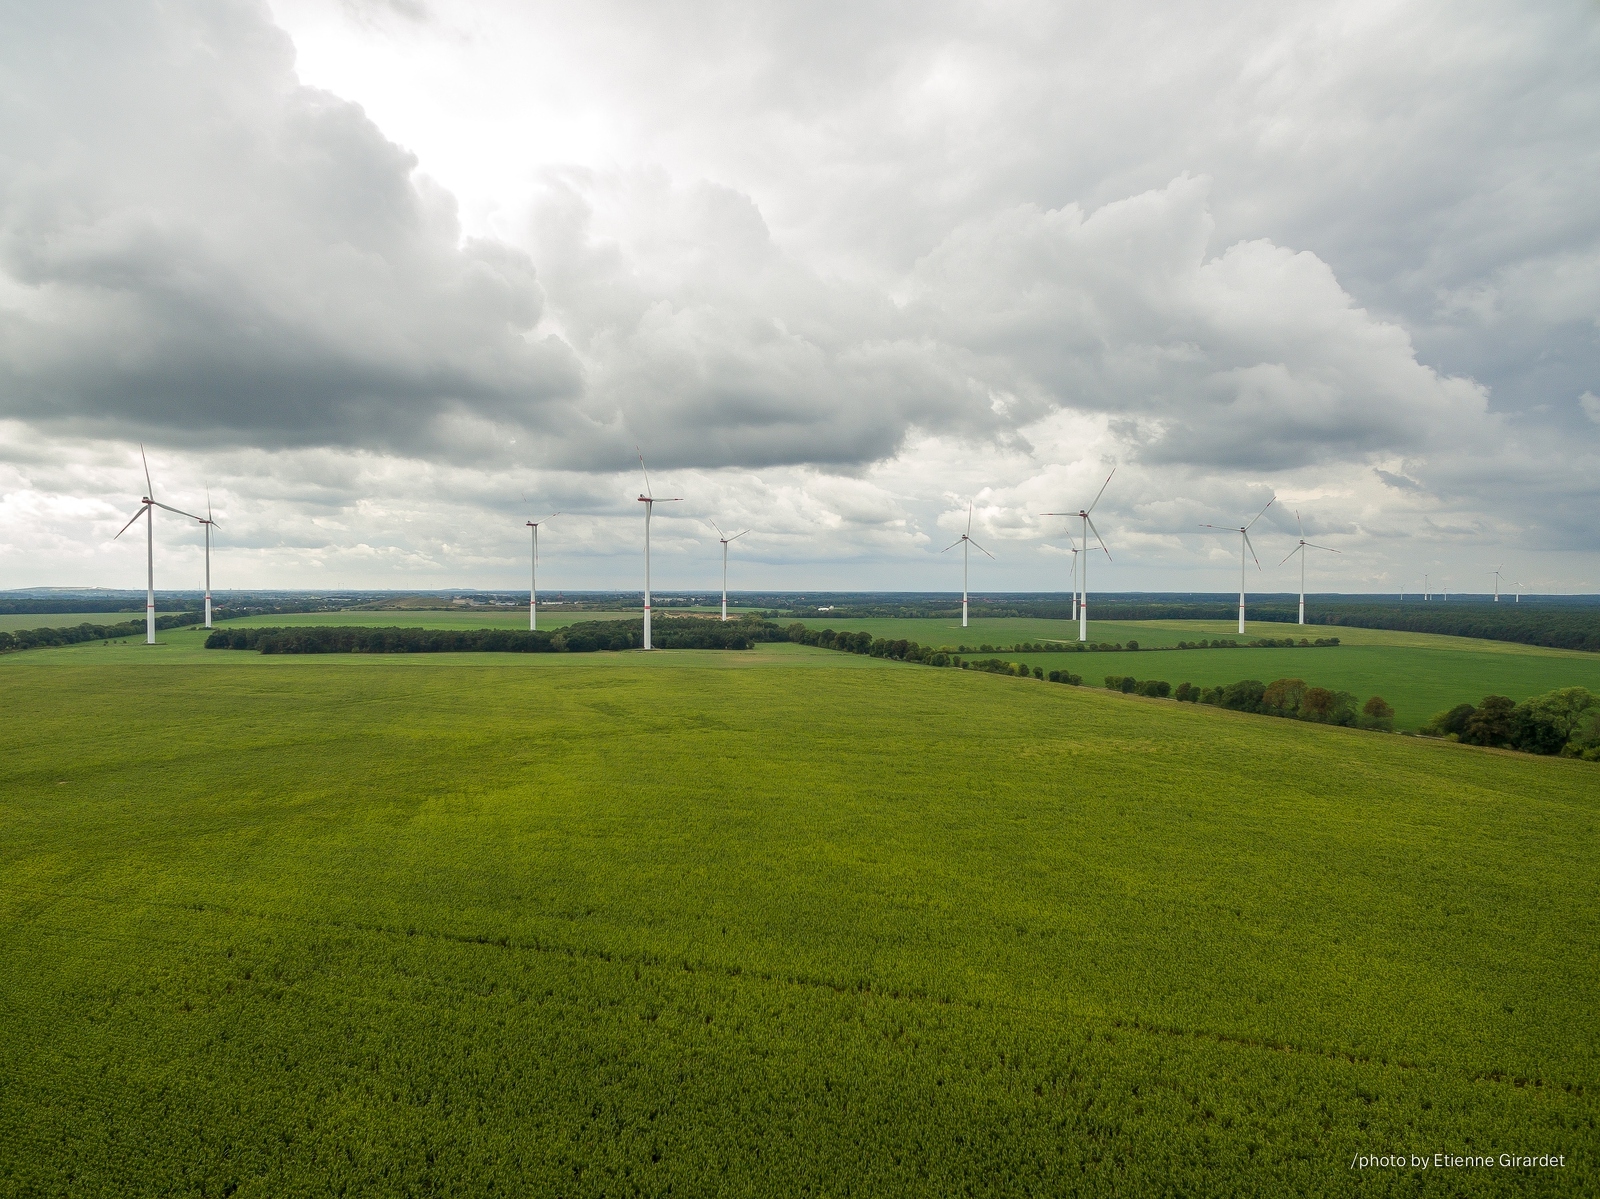 202209_11_DJI_0035-drone-wind-turbine-sky-green-renewable-by-E-Girardet.jpg